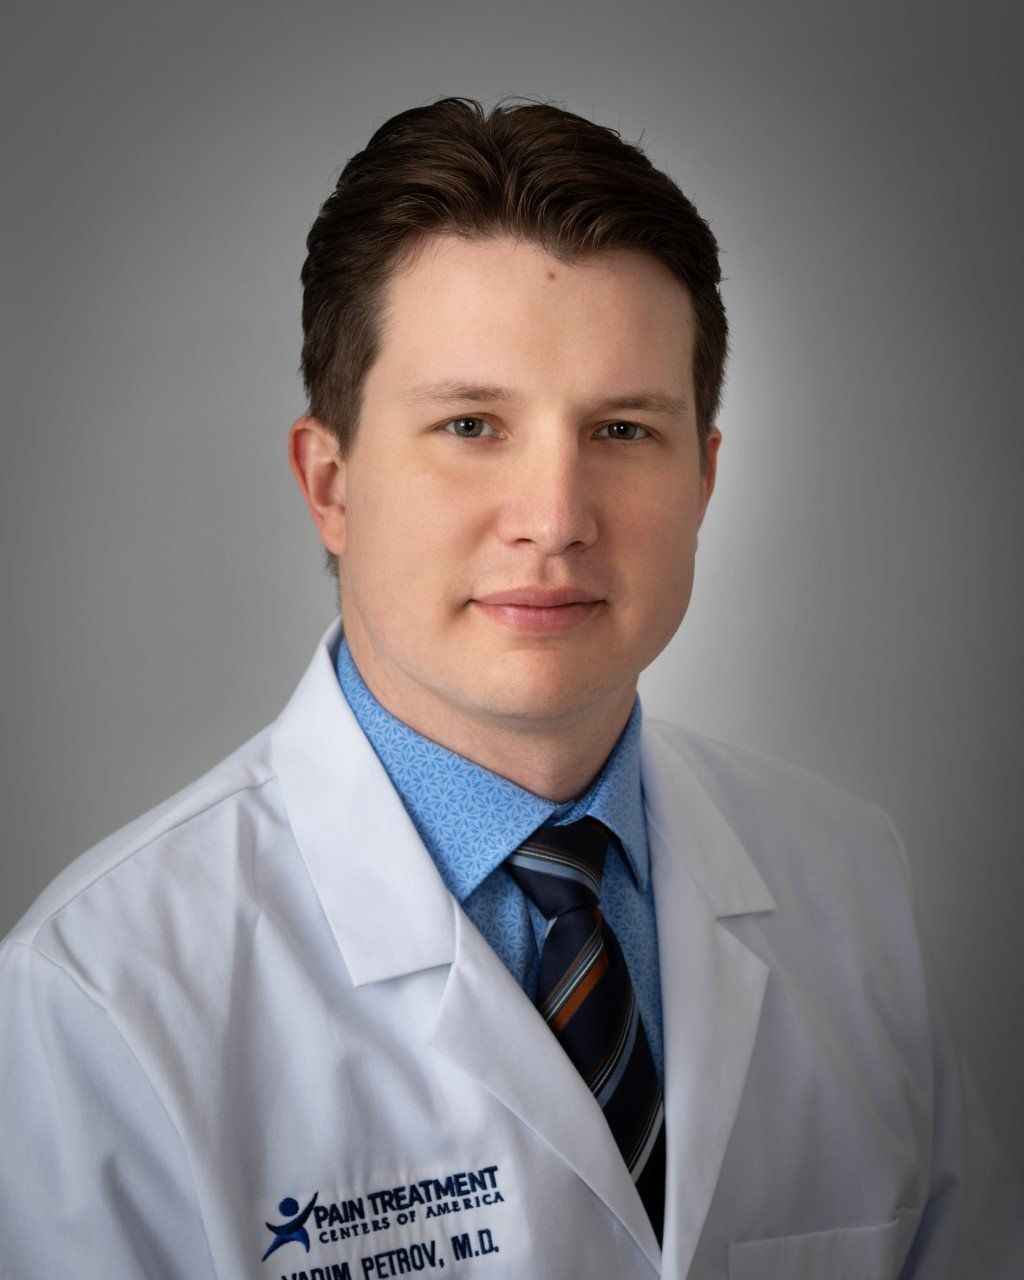 Dr. Vadim Petrov